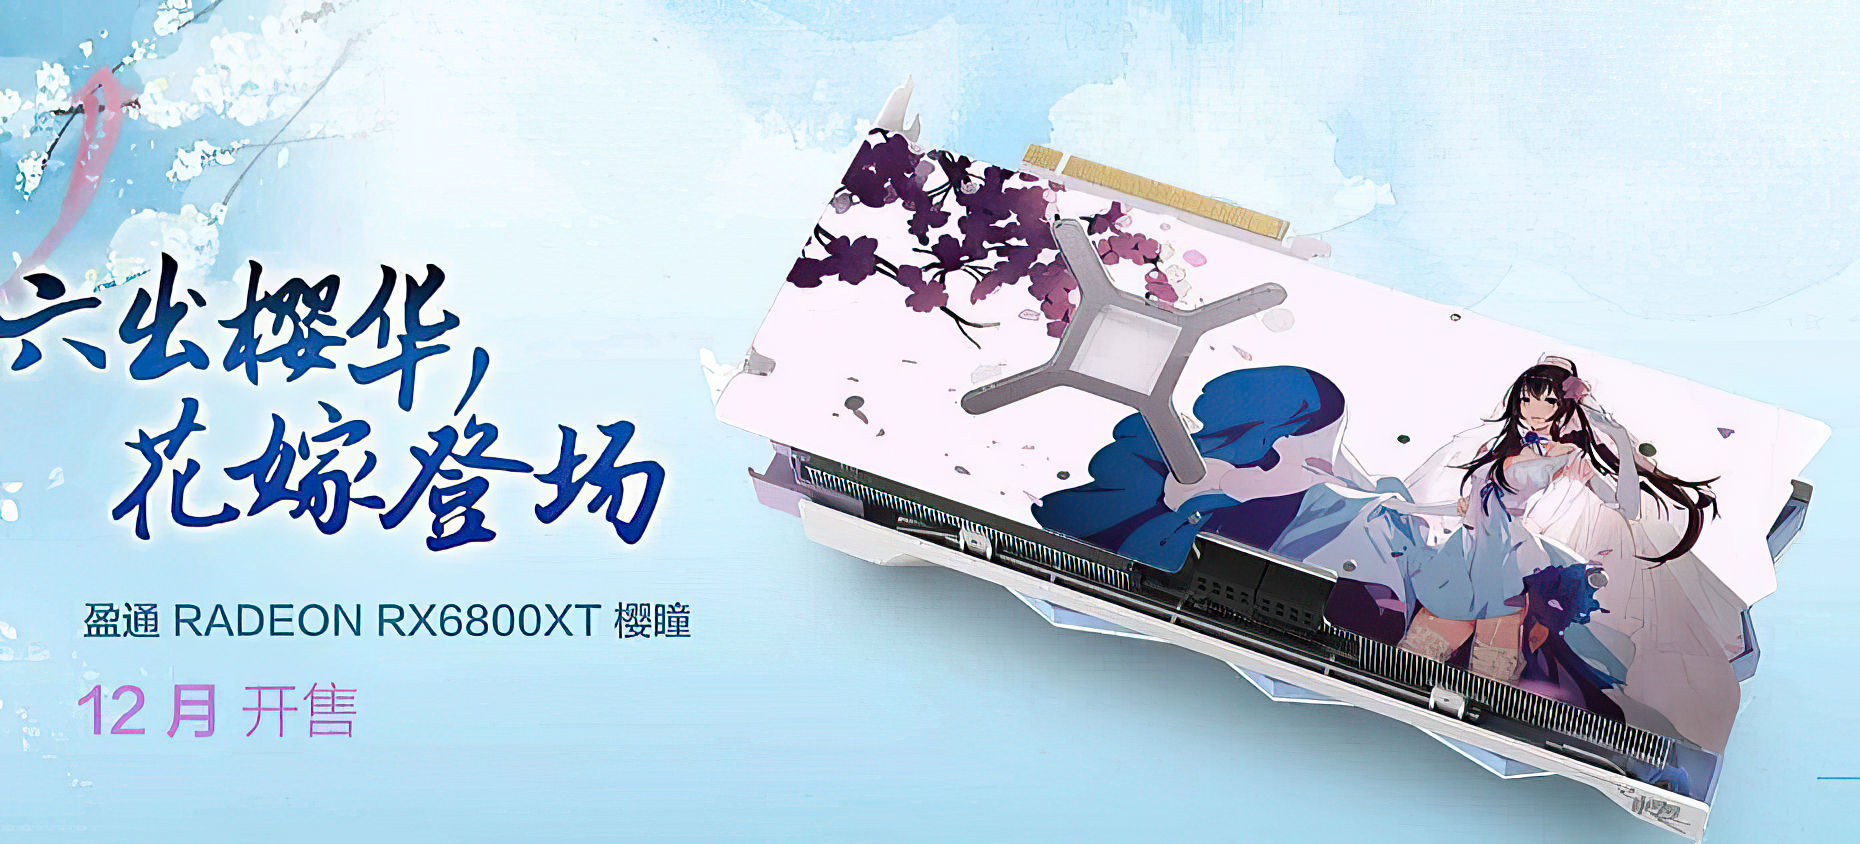 Yeston Radeon Rx 6800 Xt Sakura Edition Pictured Videocardz Com